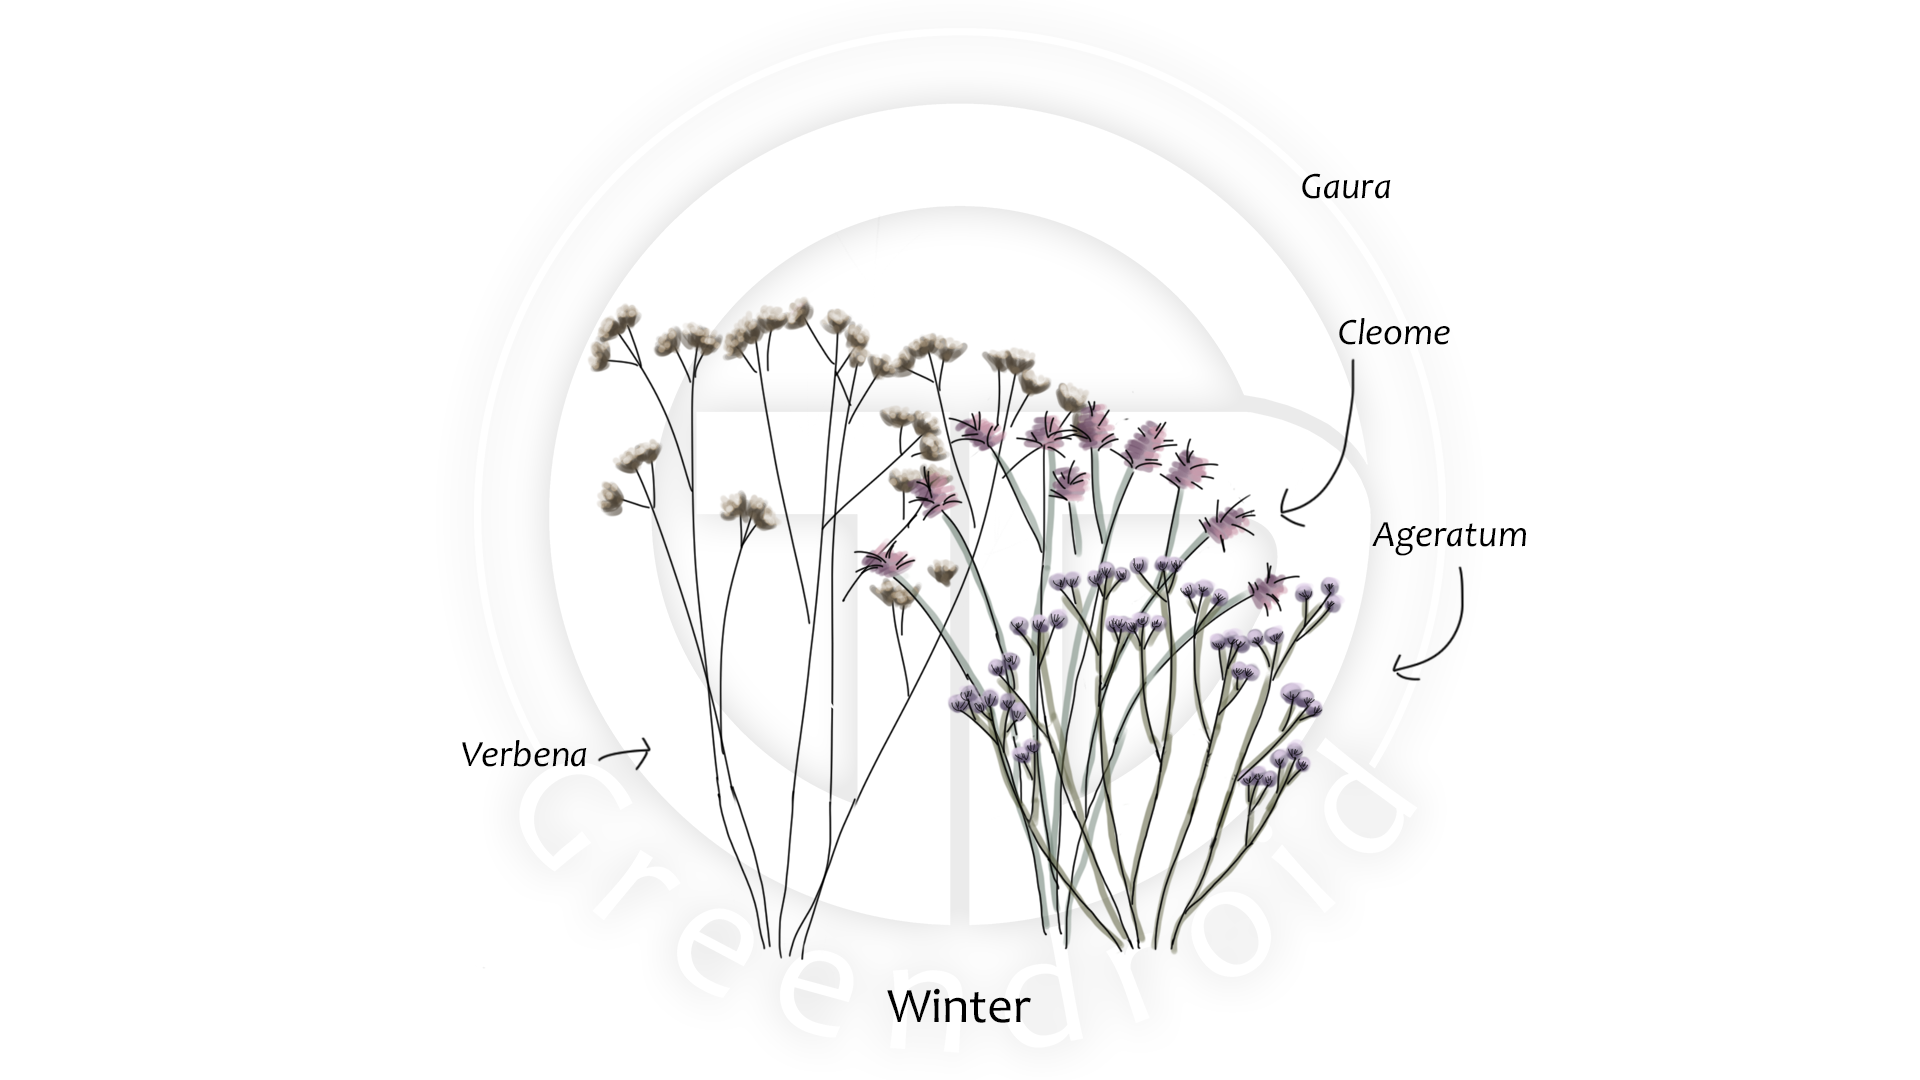 Ageratum, Cleome, Gaura und Verbena im Winter